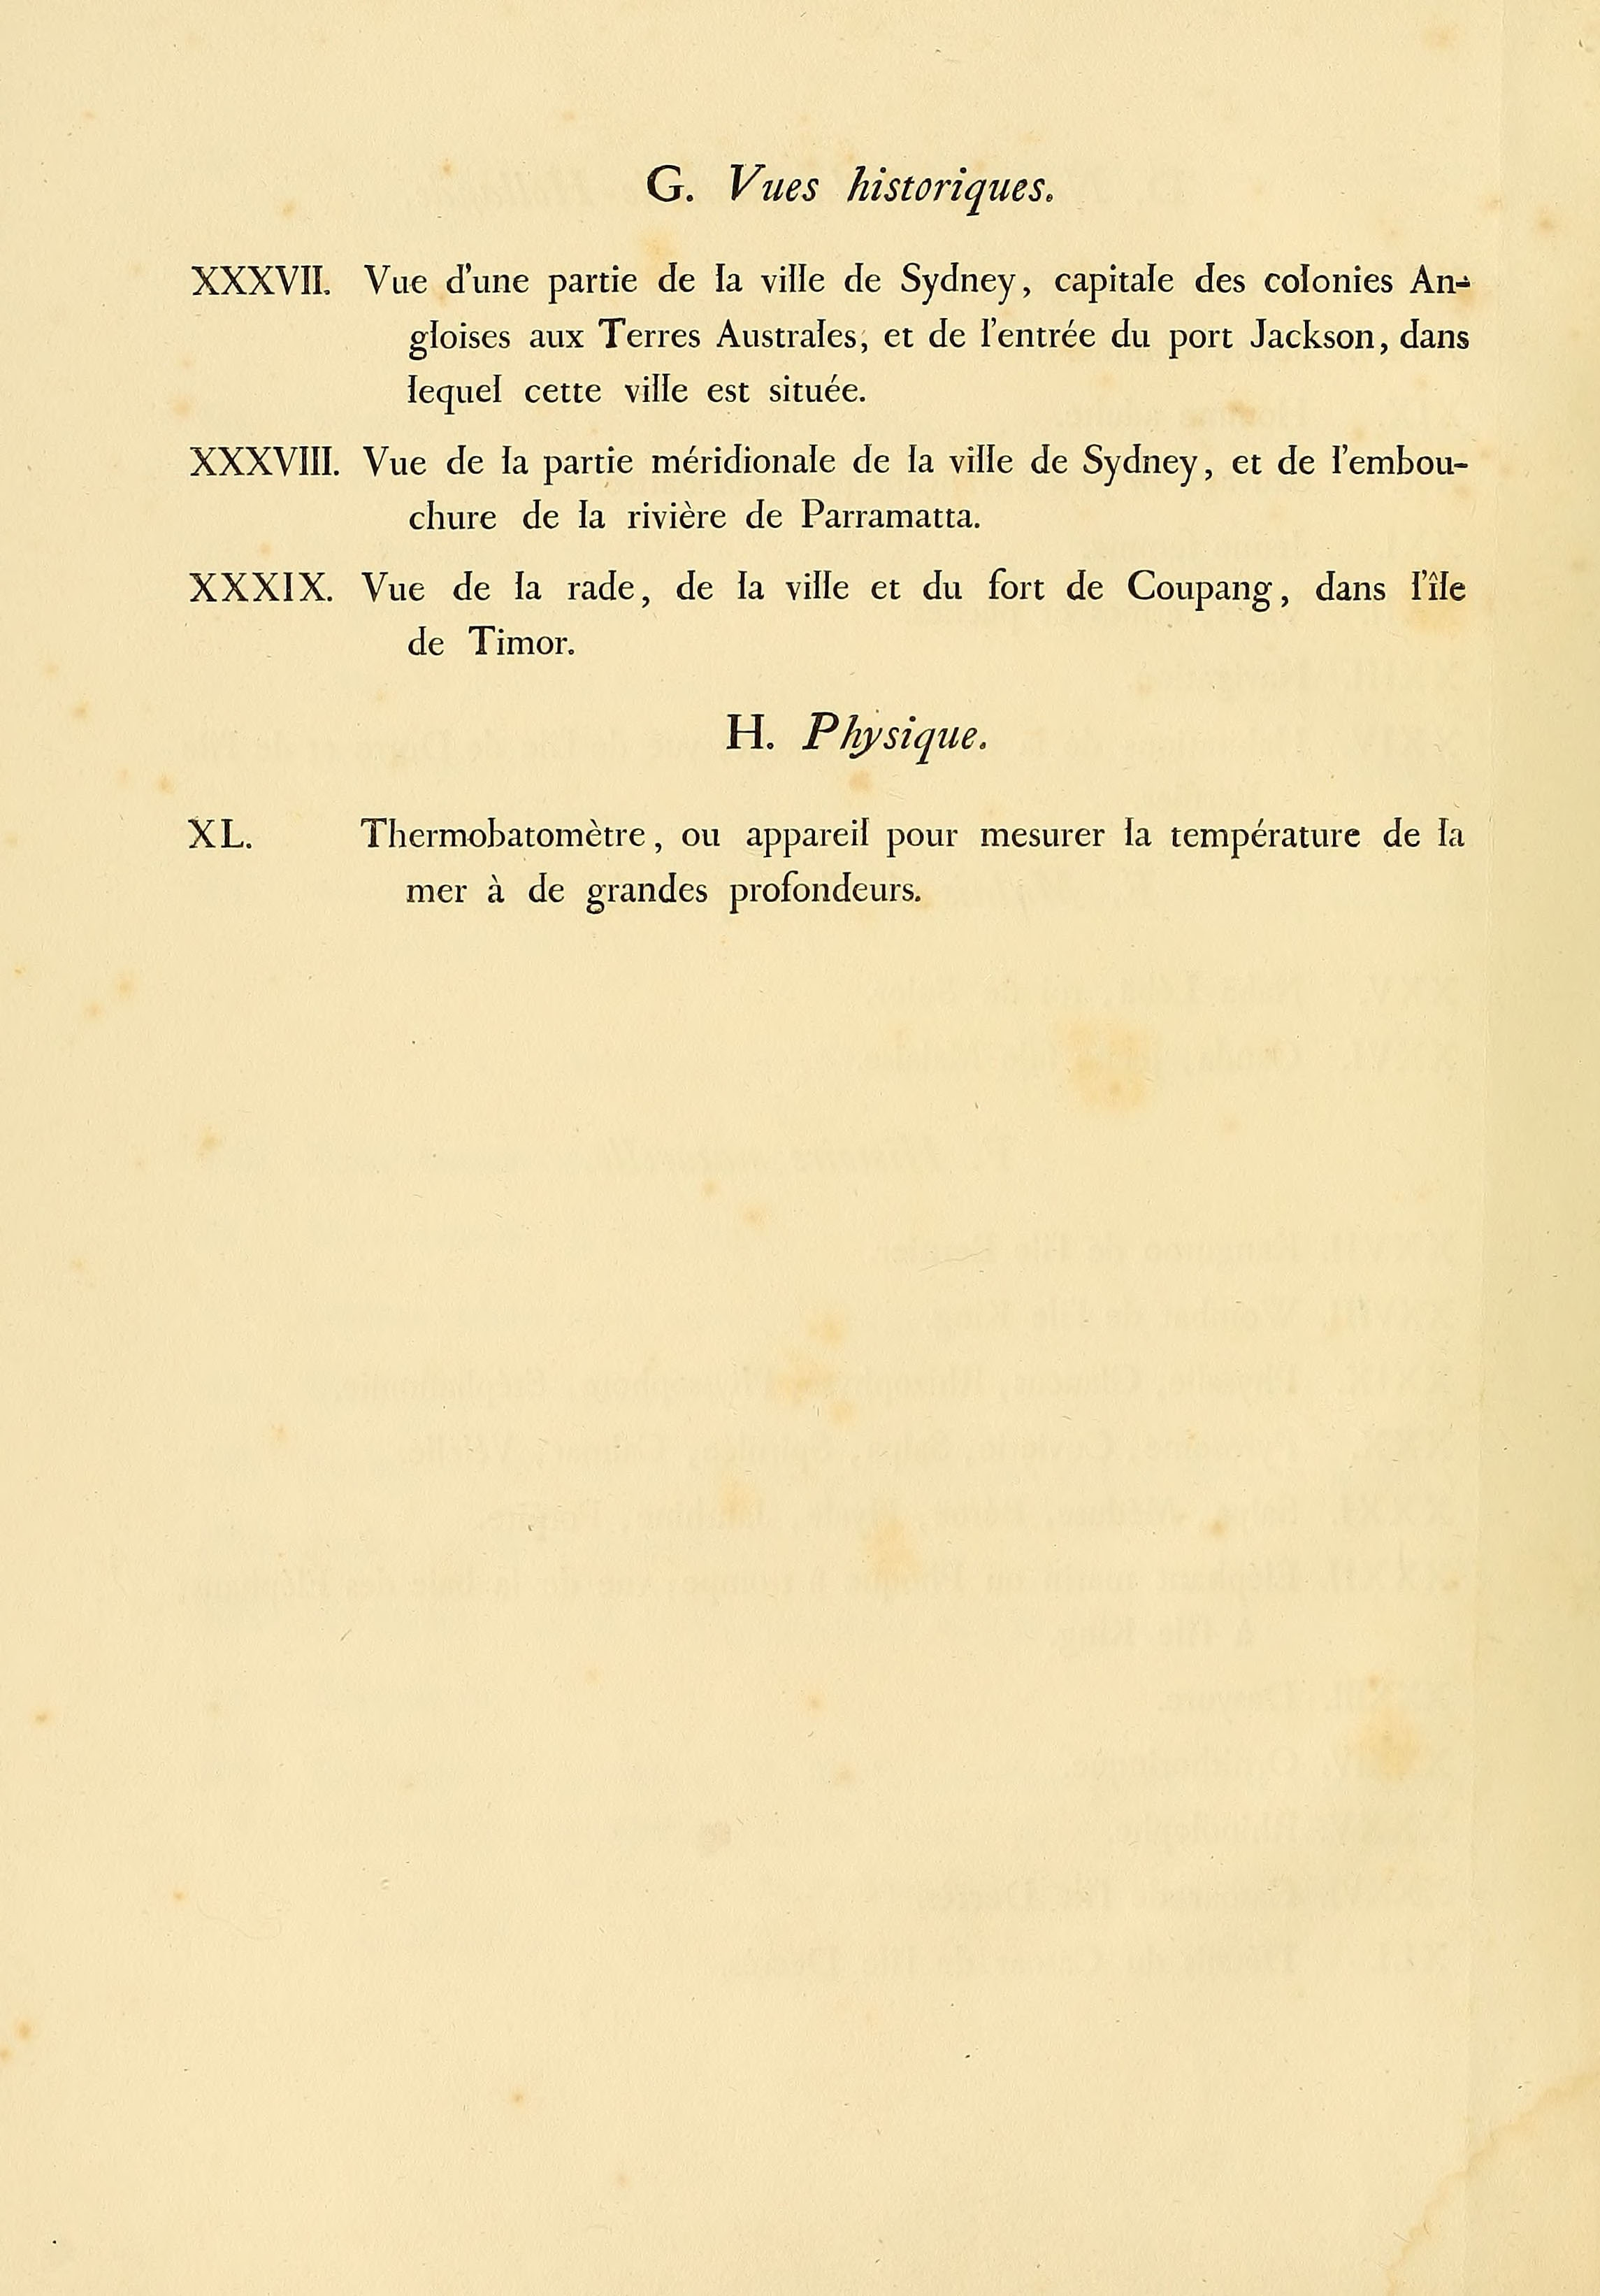 Atlas 1807, Lesueur et Petit, Voyage aux Terres Australes, index 4